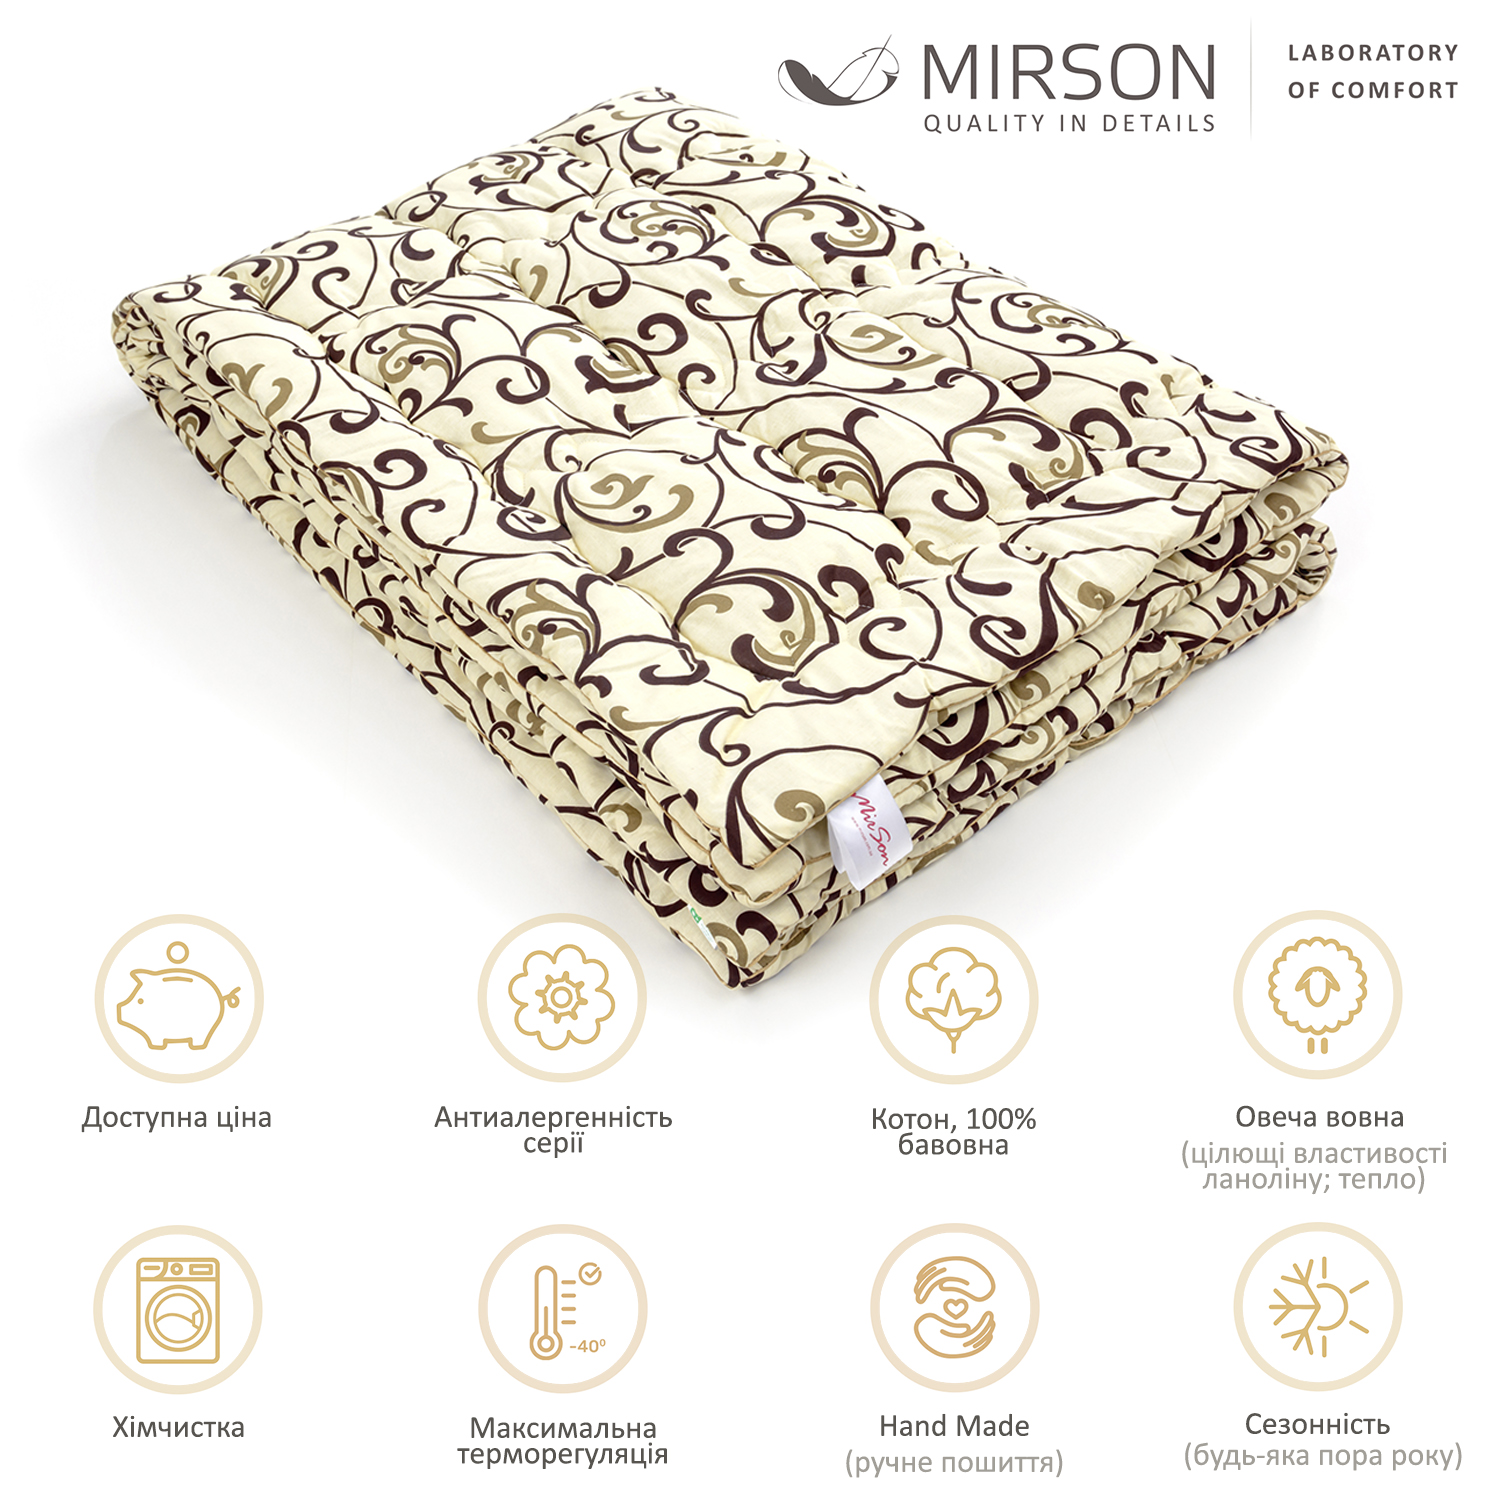 Одеяло шерстяное MirSon Hand Made №162, демисезонное, 140x205 см, бежевое с узором - фото 5